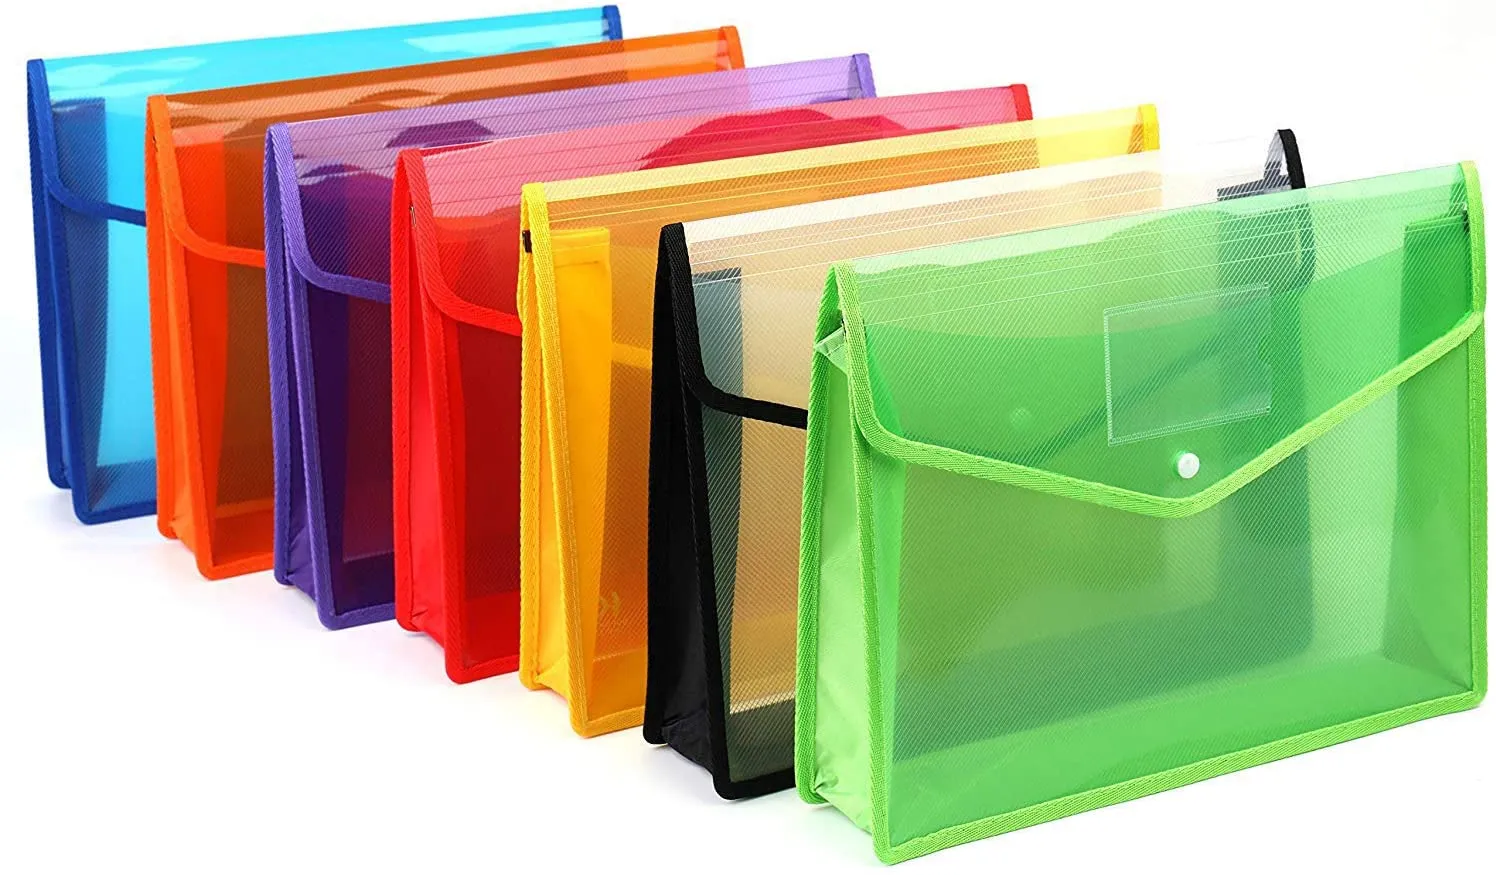 A4 plastik cüzdan dosya klasörü zarfı, su geçirmez poli zarf plastik dosyaları cüzdanlar belge klasörleri okul için düğme kapanış